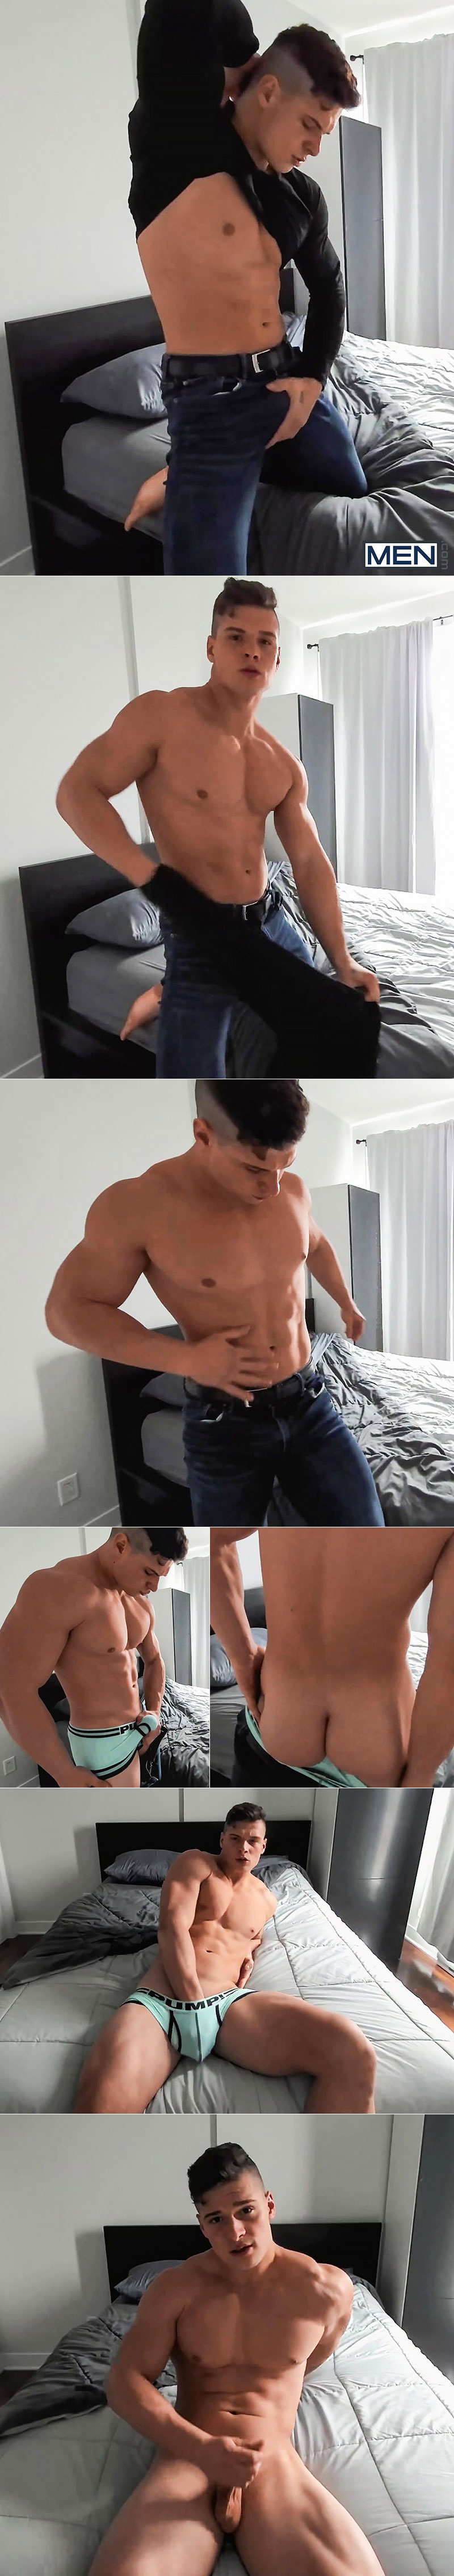 Men.com: Muscle jock Malik busts a nut